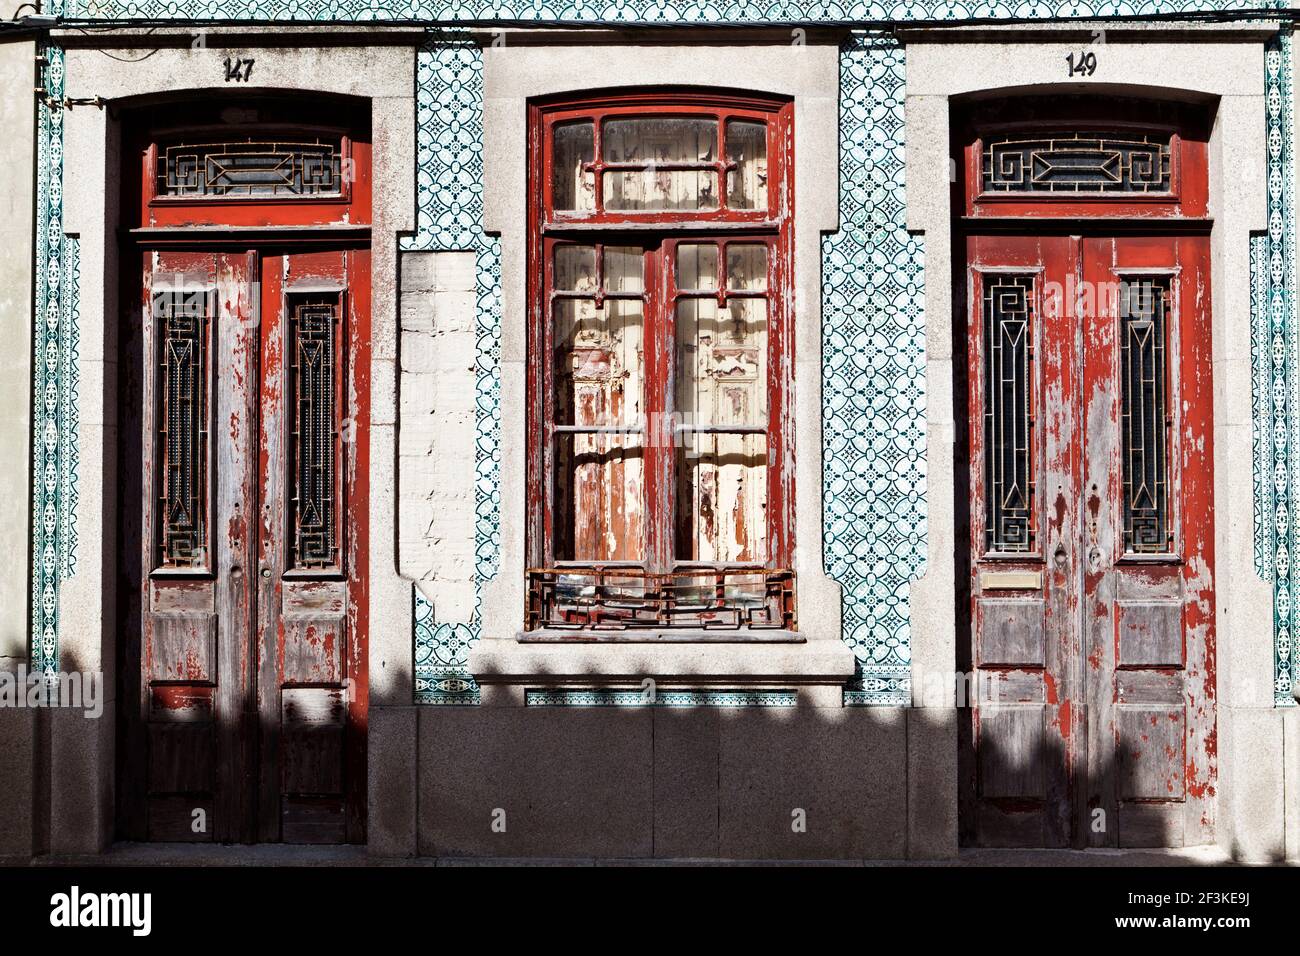 Carreaux céramiques azulejos ornent la façade d'une maison ancienne en Ilhavo, Beira Litoral, Portugal Banque D'Images